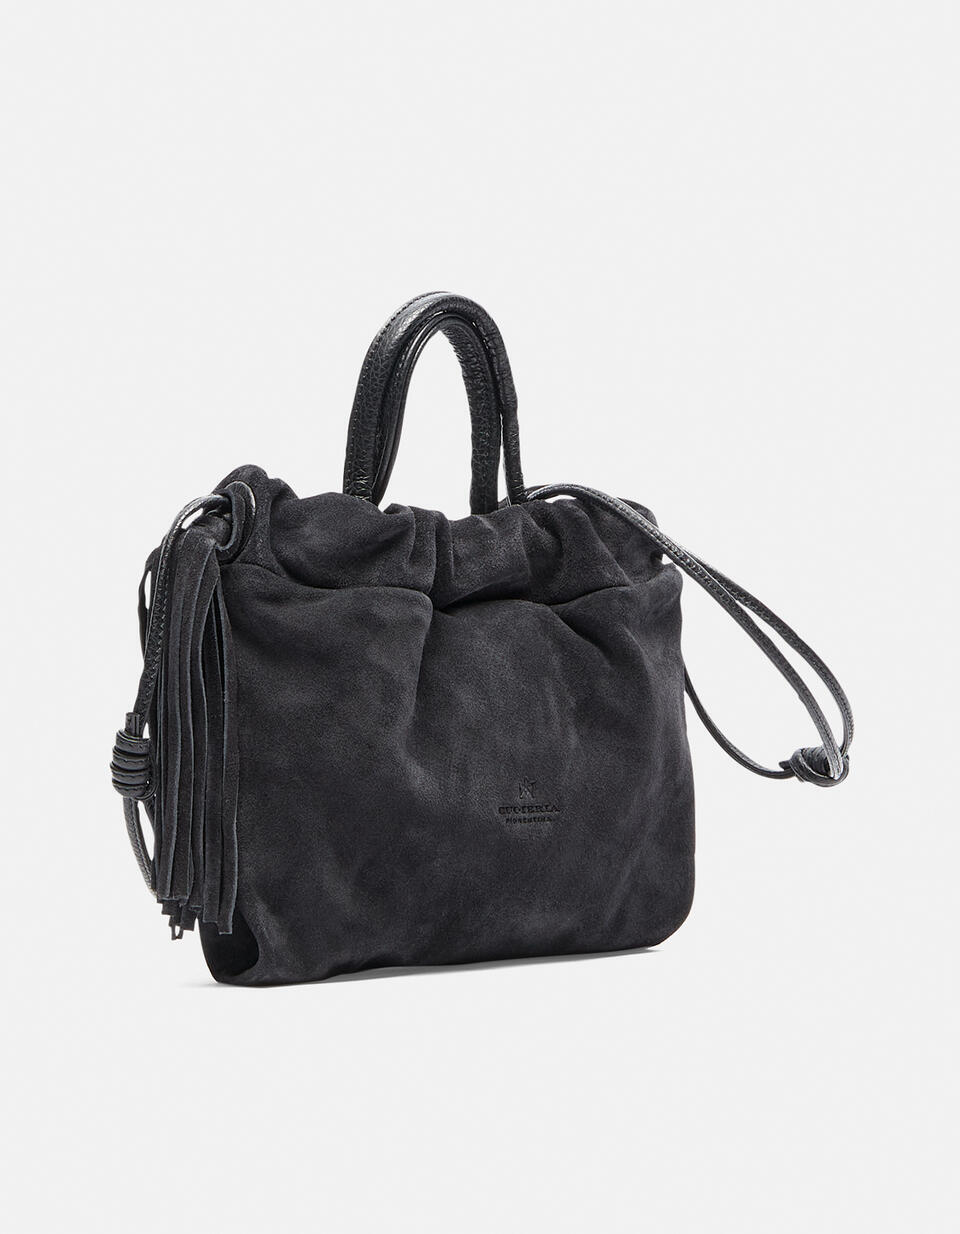 Air mini bag - TOTE BAG - WOMEN'S BAGS | bags NERO - TOTE BAG - WOMEN'S BAGS | bagsCuoieria Fiorentina